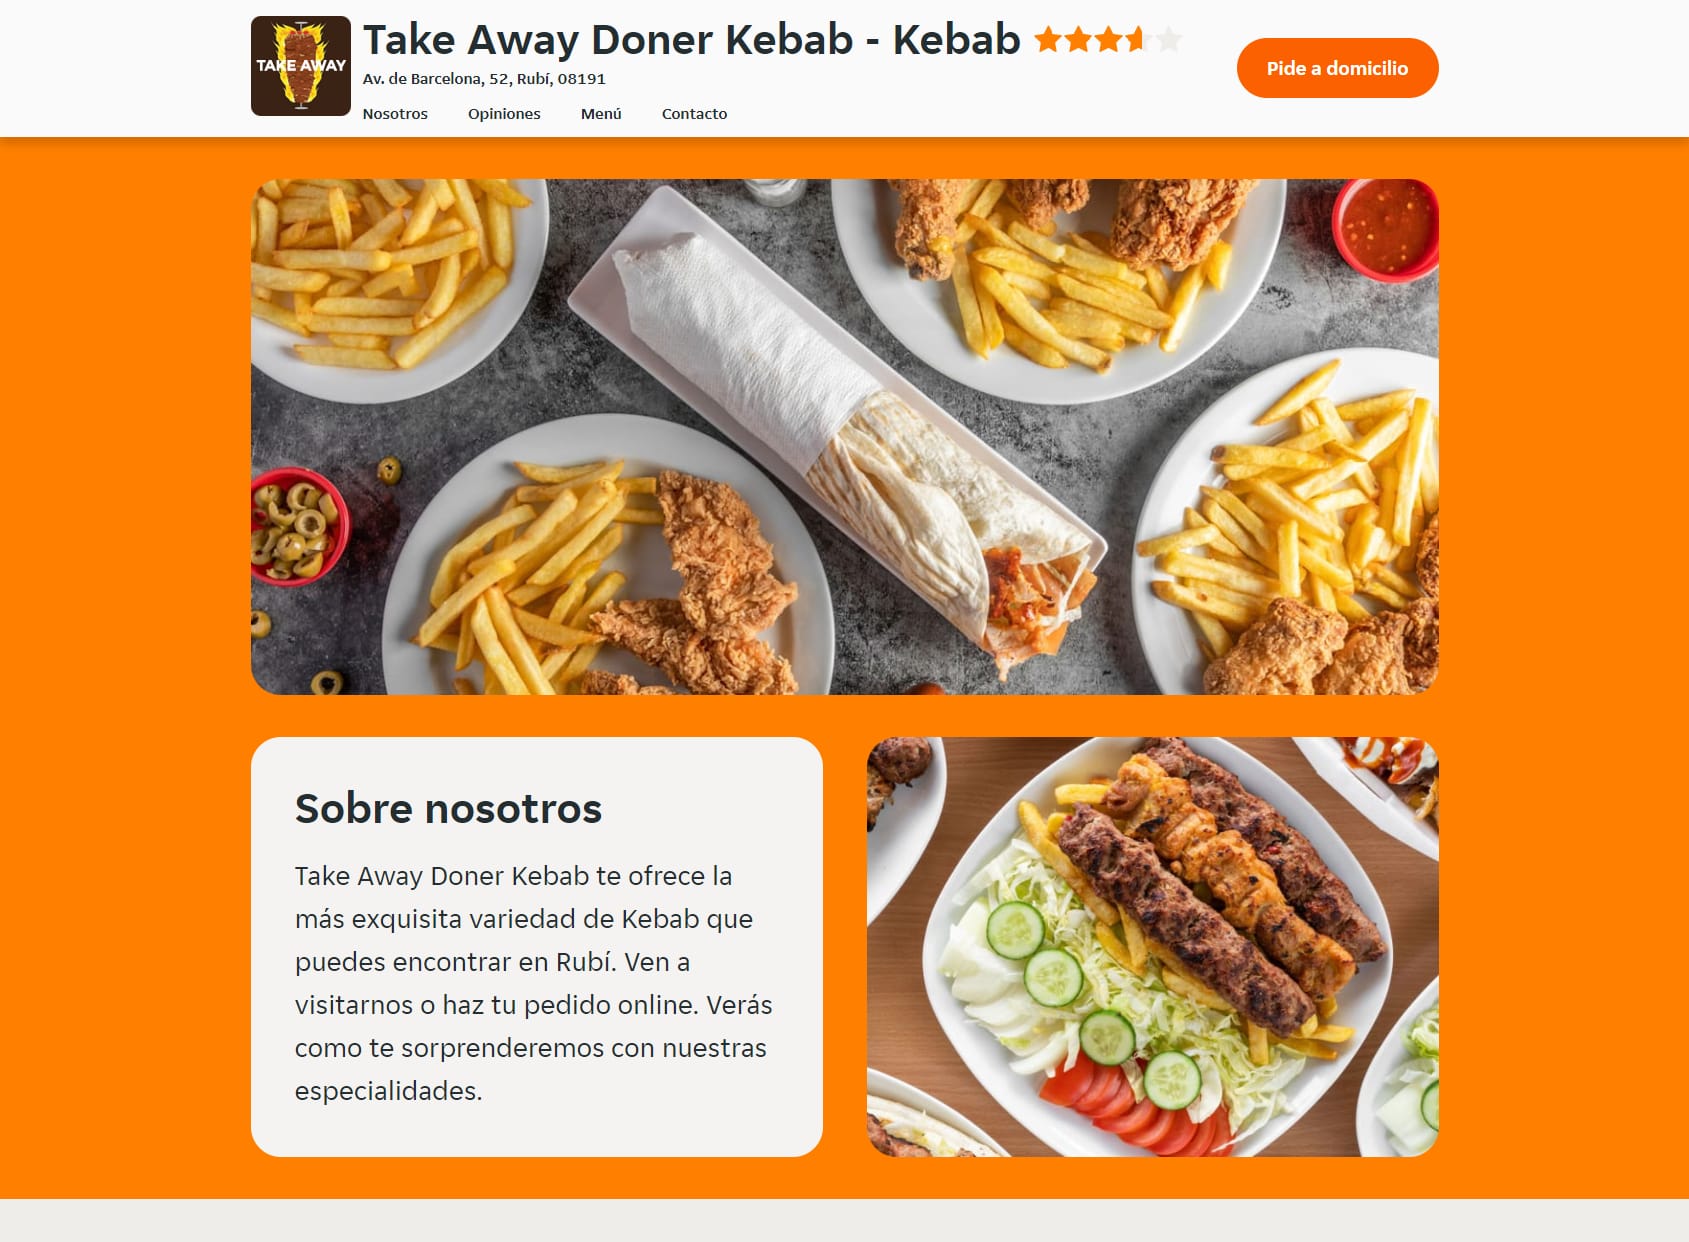 Take away doner kebab rubi barcelona